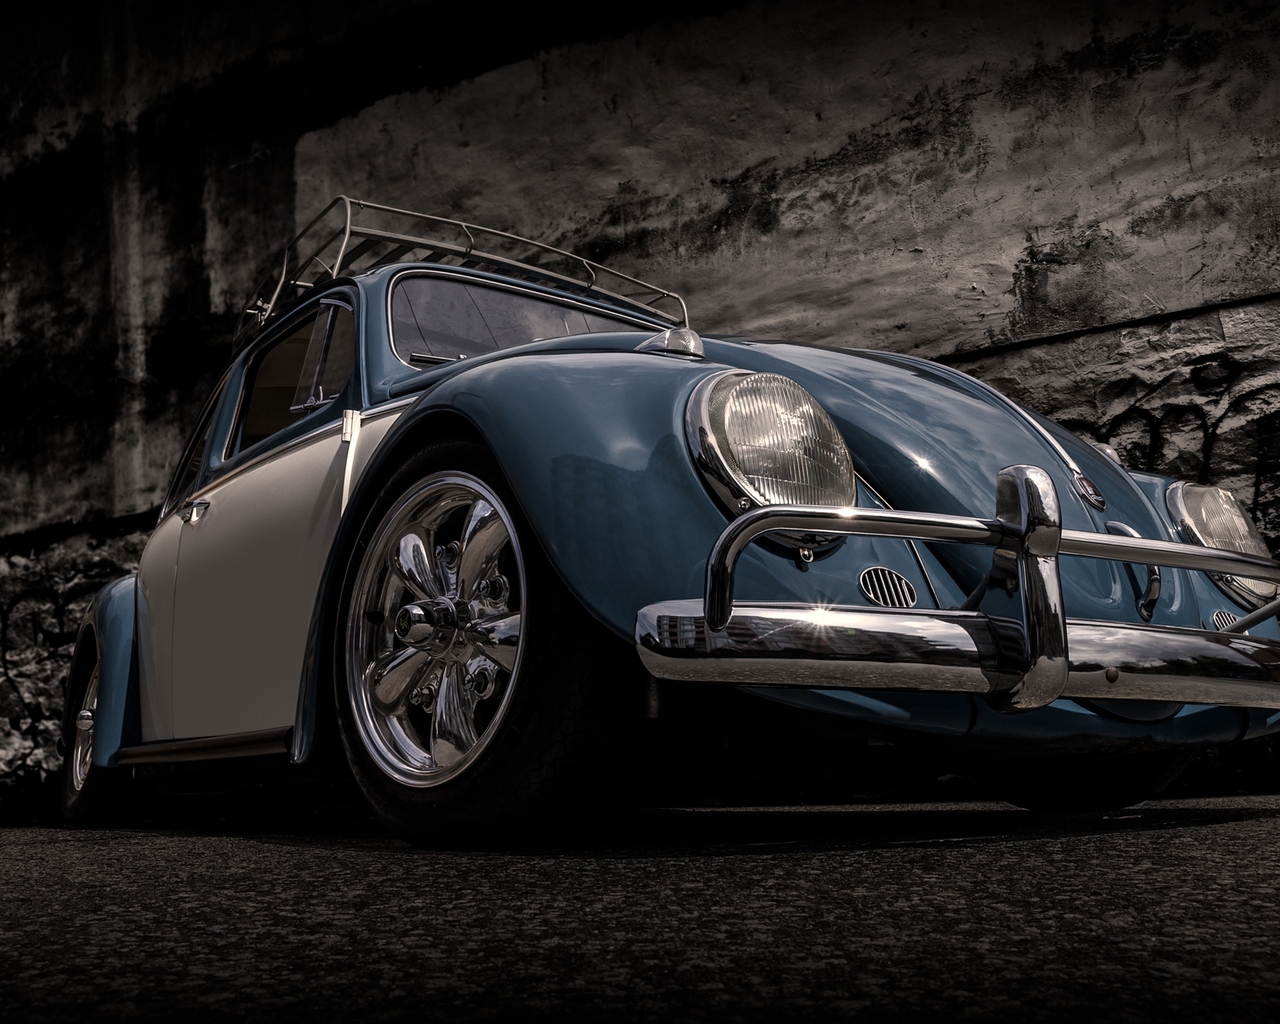 Volkswagen Beetle Retro for 1280 x 1024 resolution